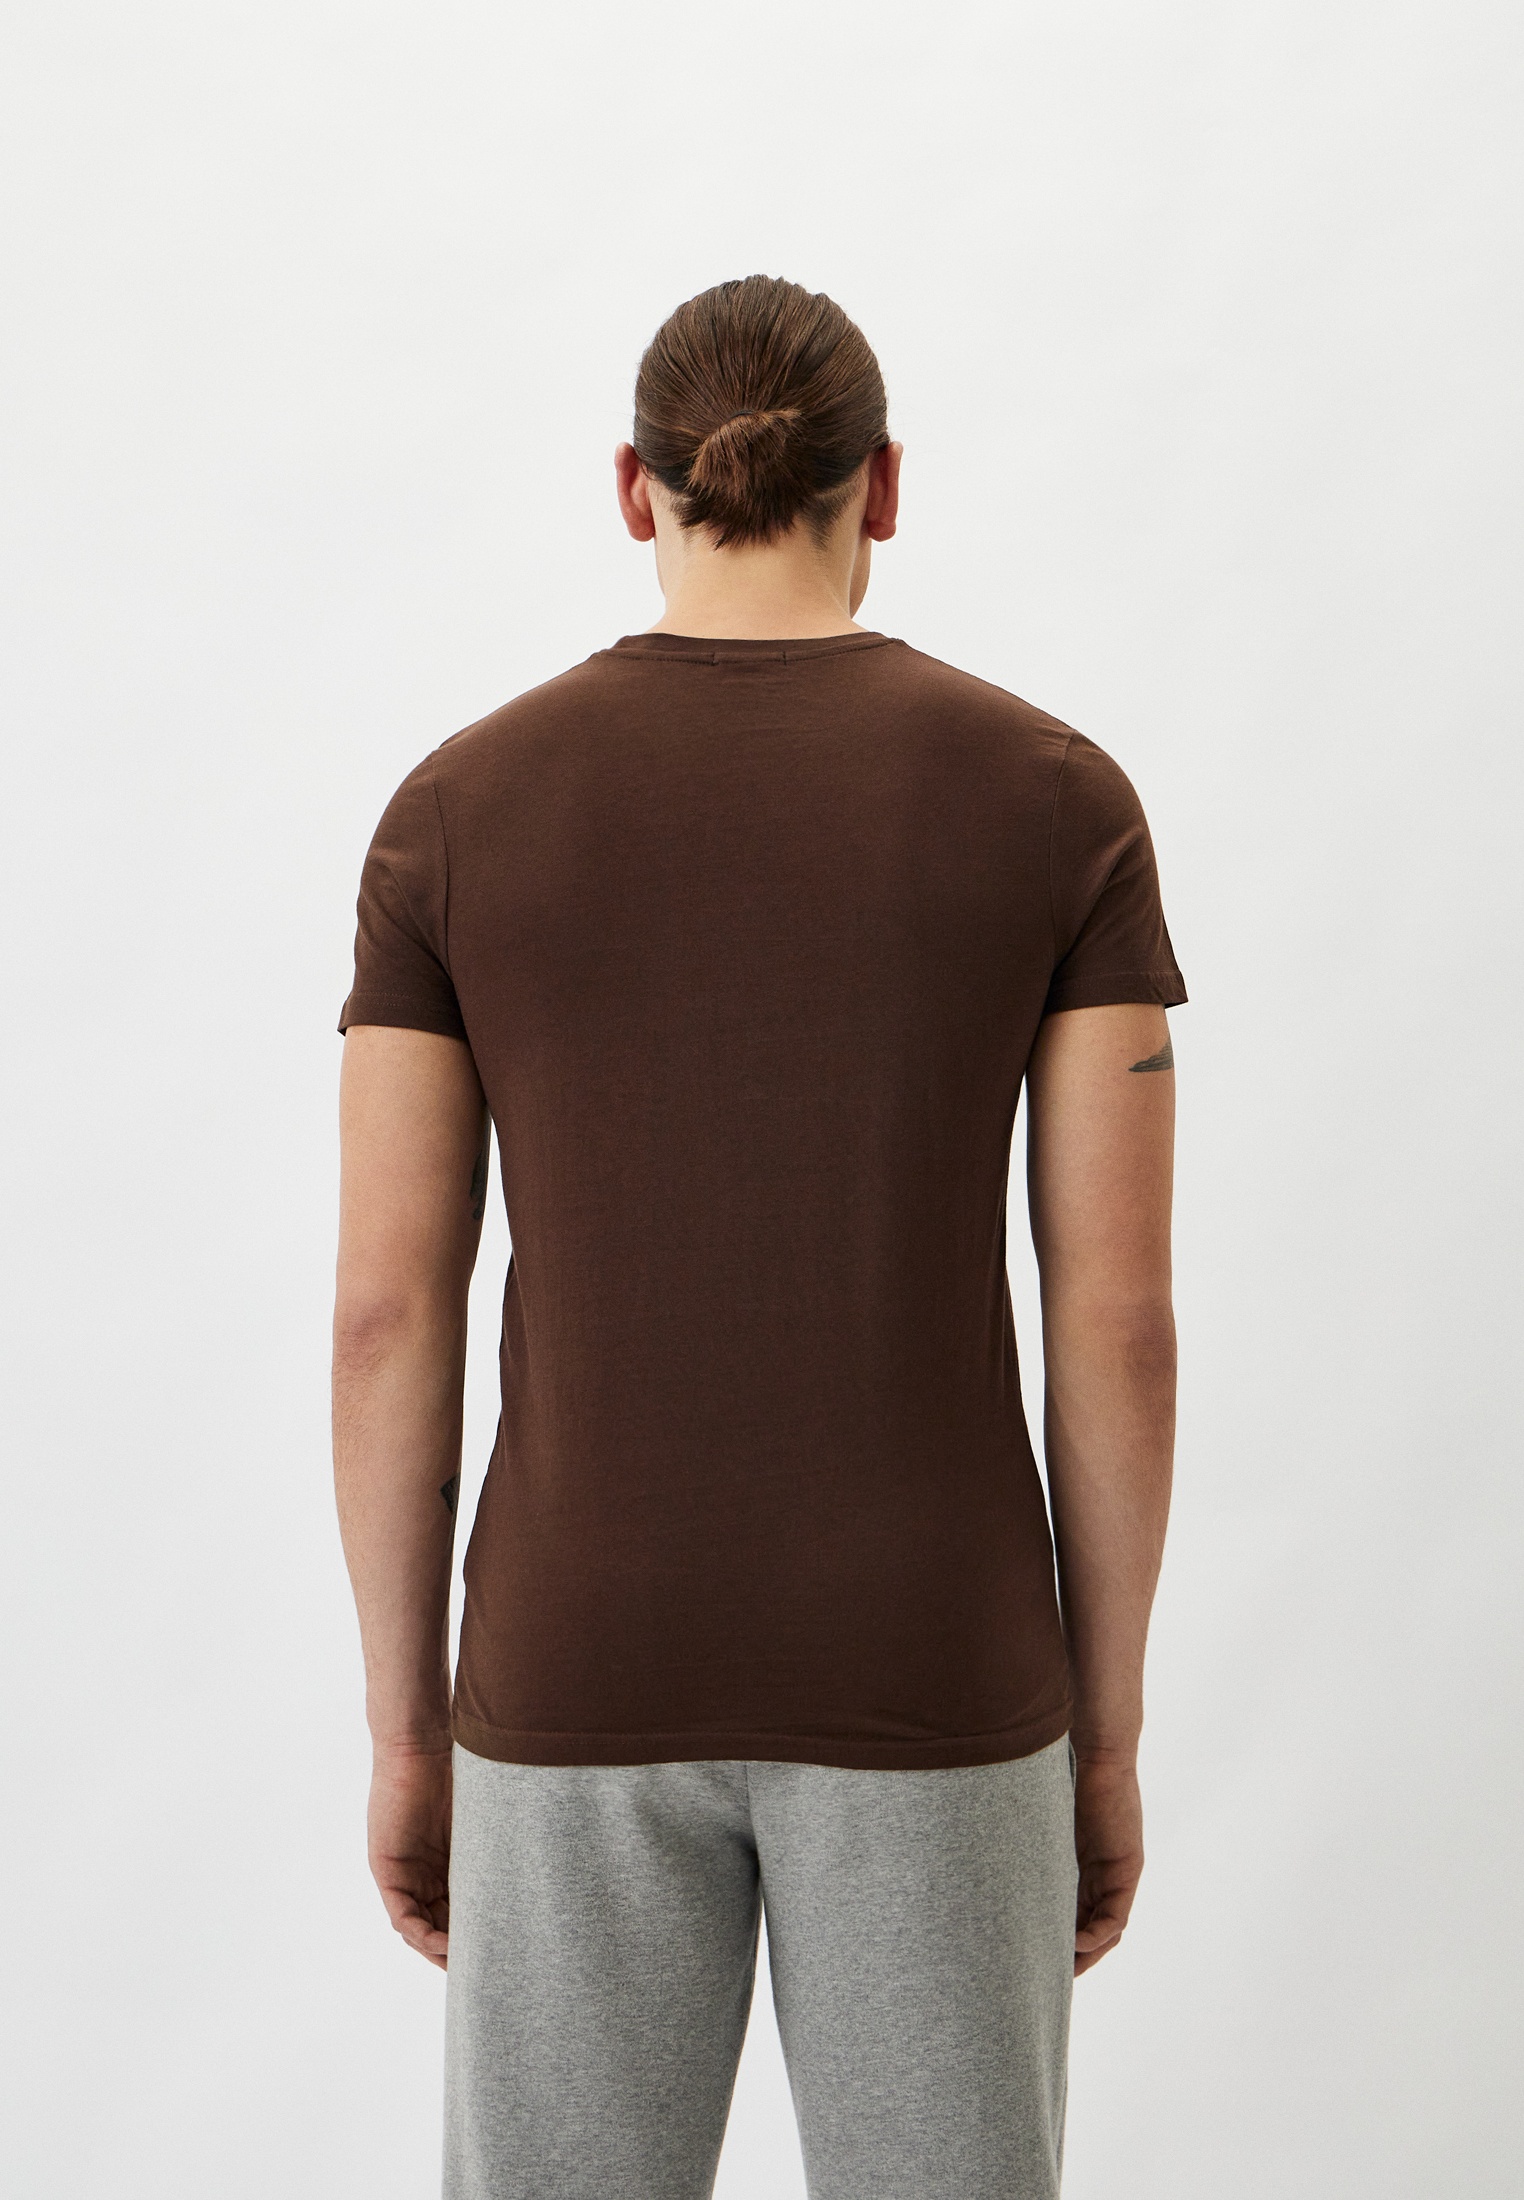 Мужская футболка Baldinini (Балдинини) B-OLM-M001: изображение 3